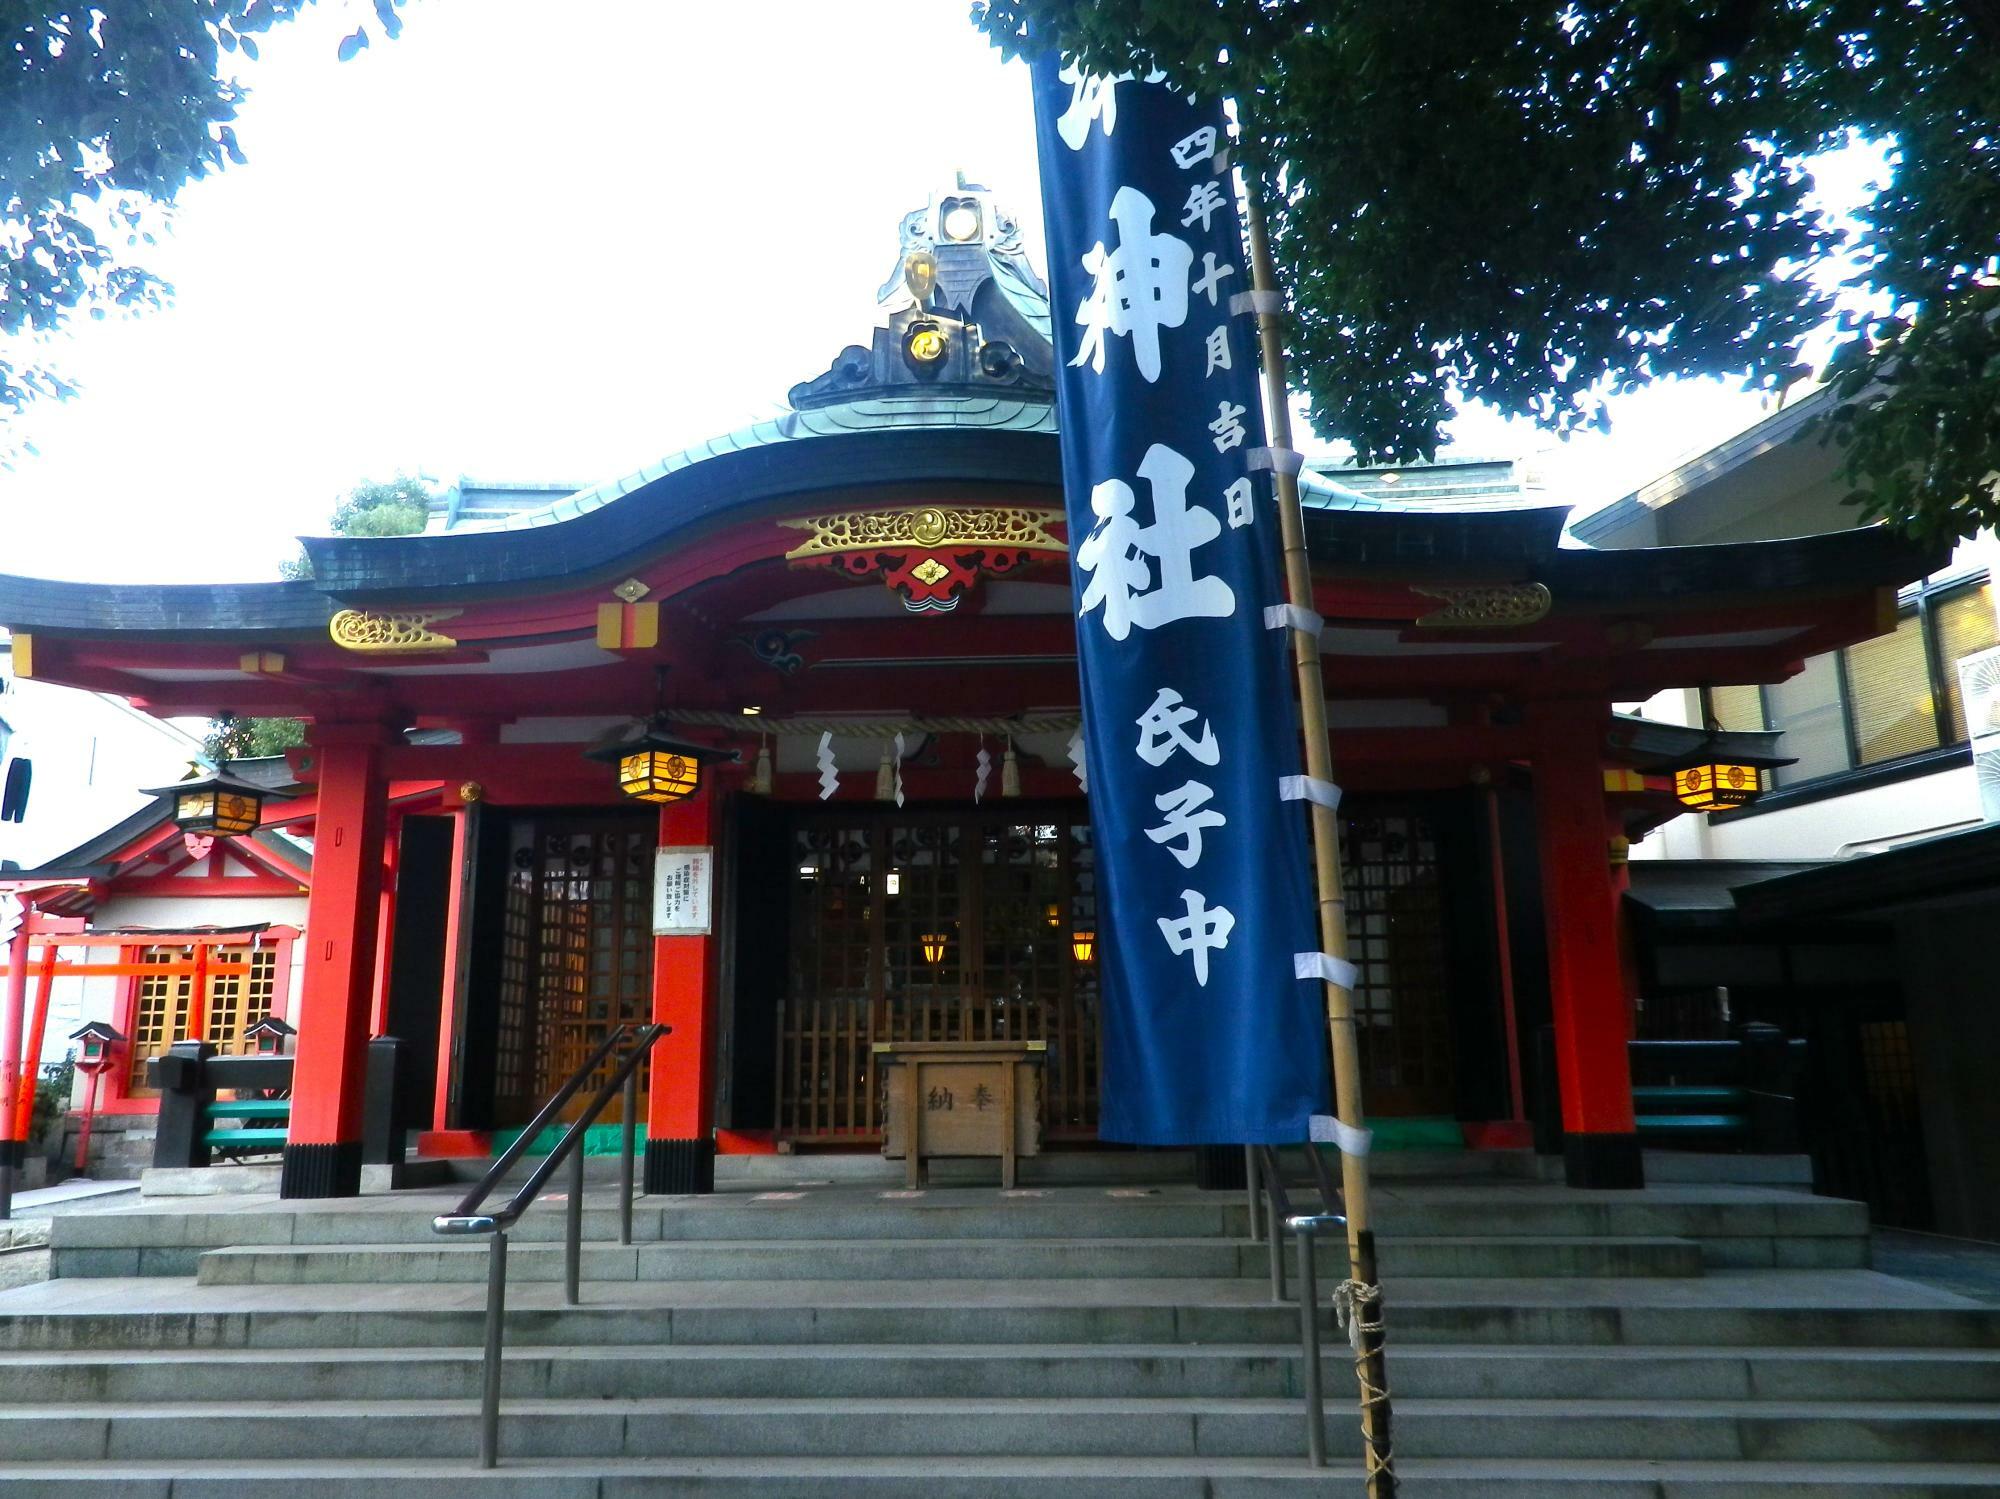 「神津神社」境内の奥にある本殿。